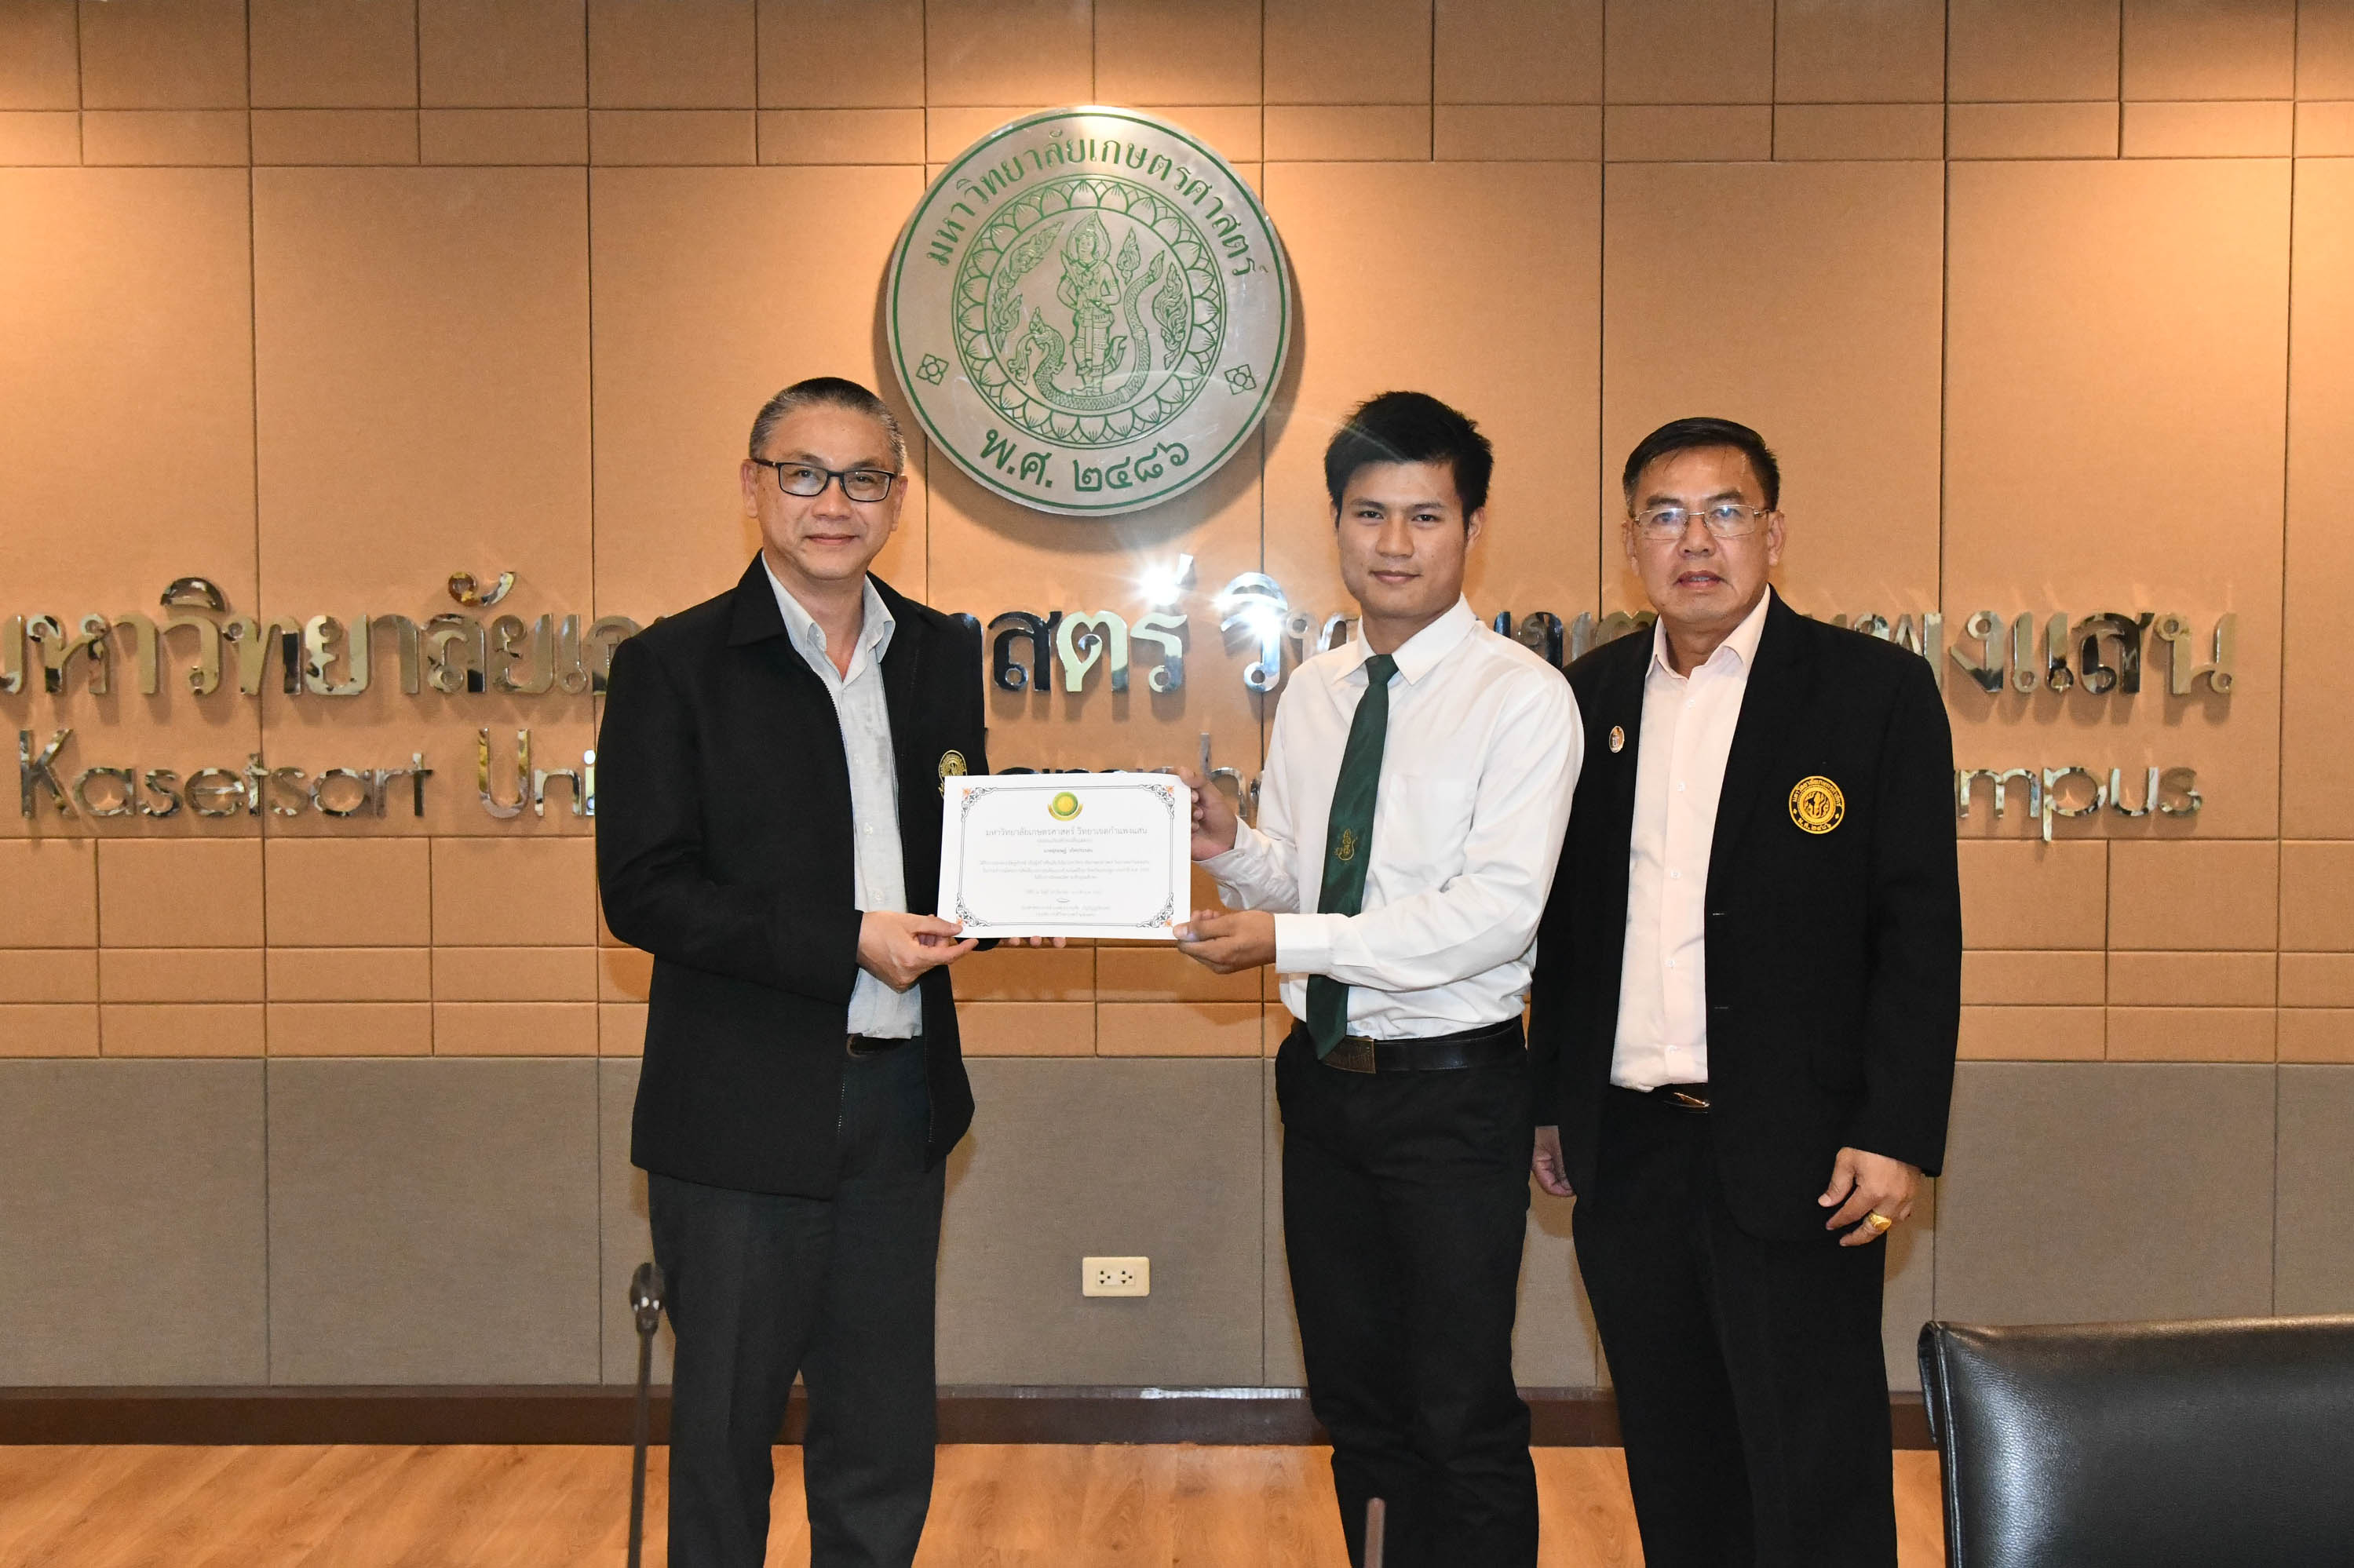 นิสิตคณะศึกษาศาสตร์และพัฒนศาสตร์ ได้รับรางวัลชนะเลิศ ระดับอุดมศึกษา ในโครงการเยาวชนต้นแบบด้านดนตรีไทย